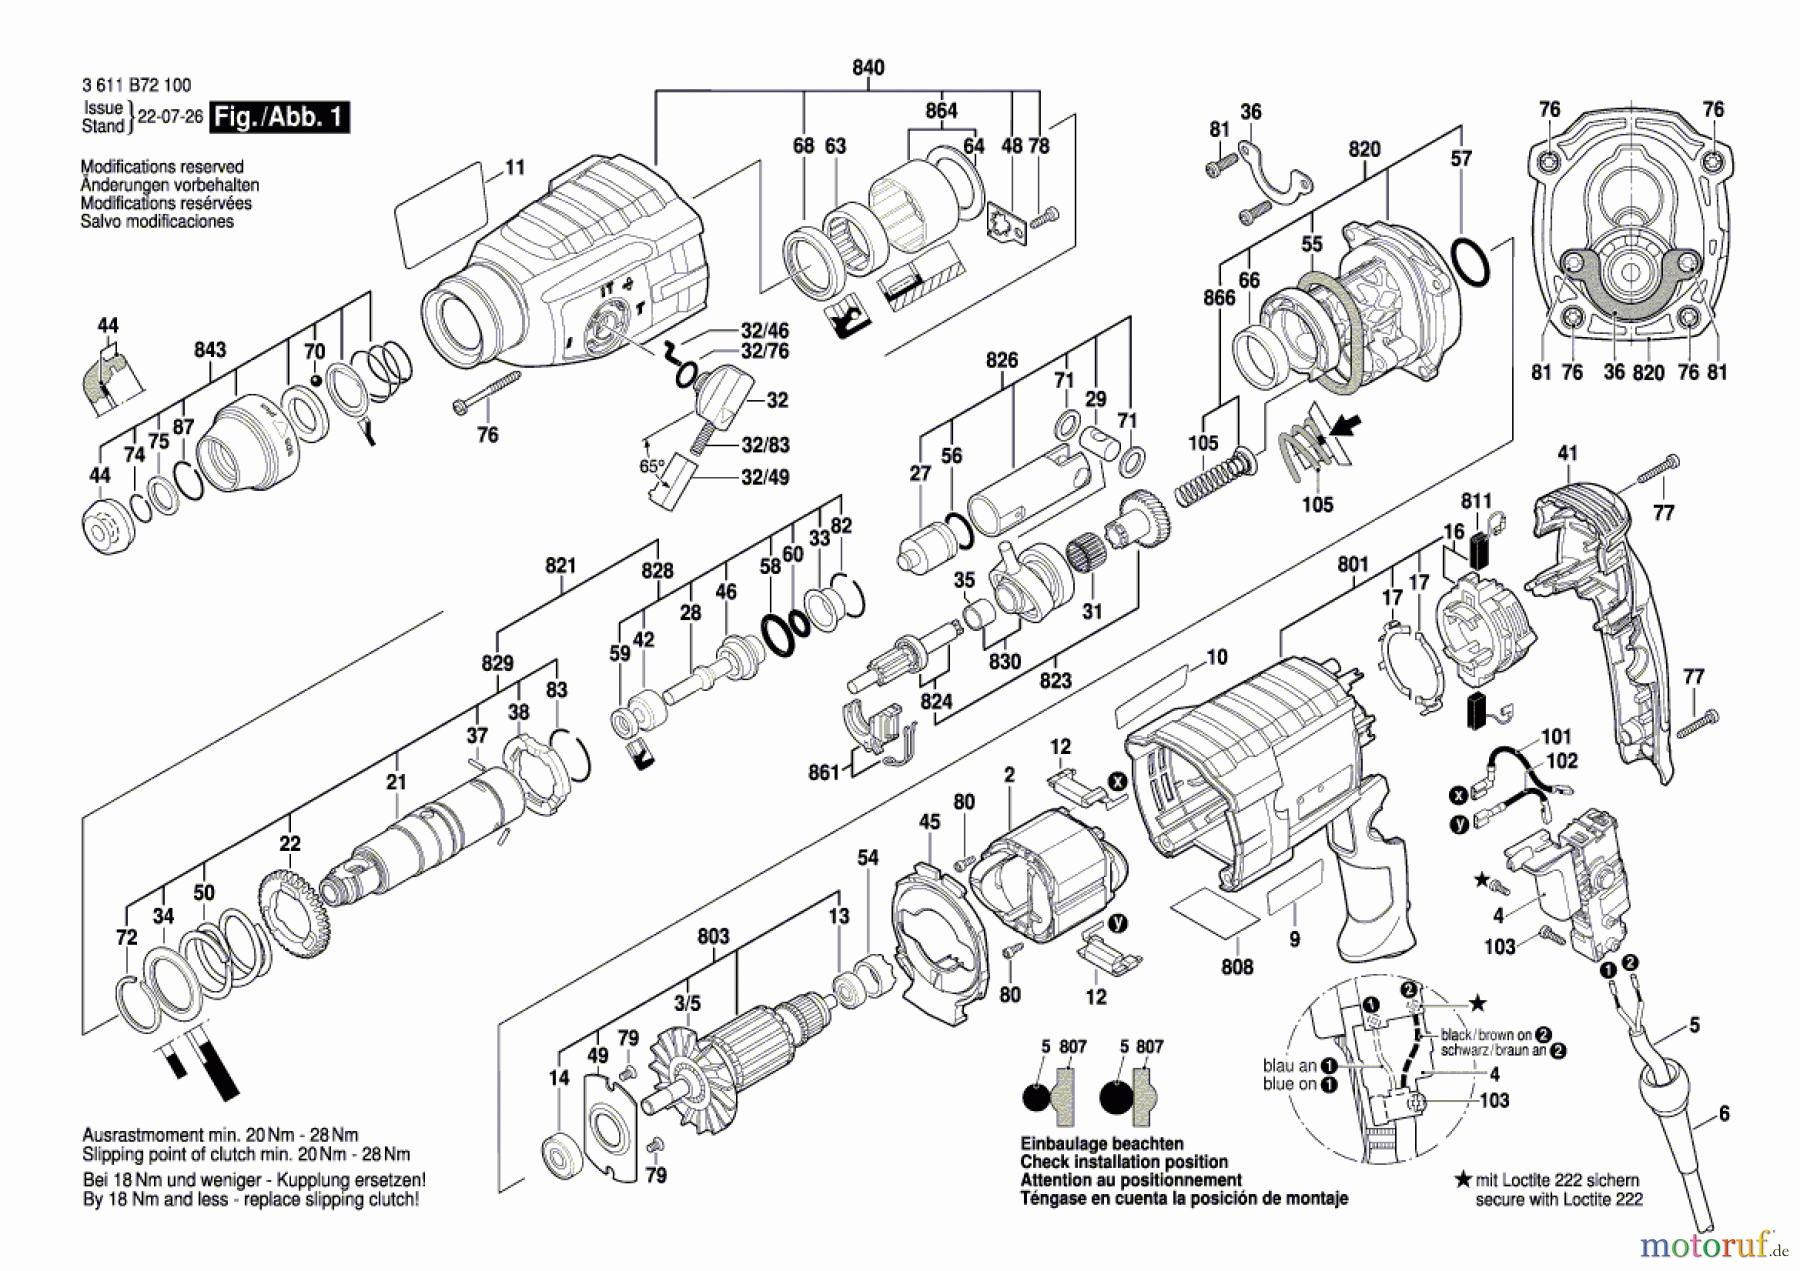  Bosch Werkzeug Bohrhammer GBH 2-24 DRE Seite 1